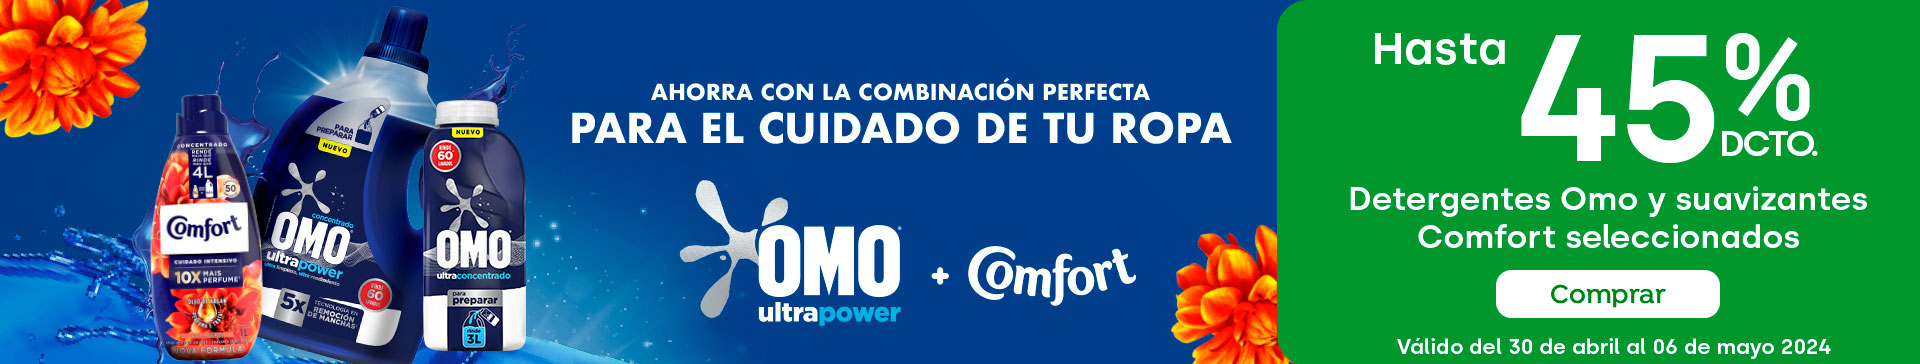 Banner ppal proveedor - Unilever - Detergentes Omo y Suavizantes Comfort seleccionados hasta 45% descto - 30-04-2024 al 06-05-2024